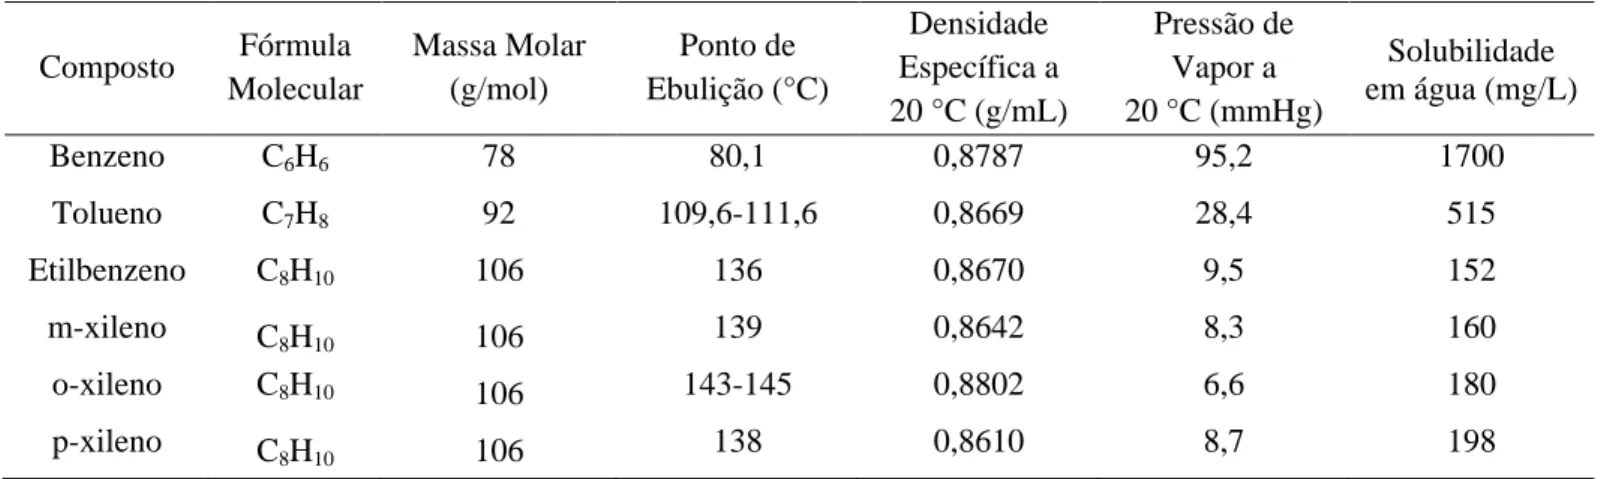 Tabela 6 – Propriedades físicas e químicas dos compostos BTEX.  Composto  Fórmula  Molecular  Massa Molar (g/mol)  Ponto de  Ebulição (°C)  Densidade  Específica a   20 °C (g/mL)  Pressão de  Vapor a          20 °C (mmHg)  Solubilidade  em água (mg/L)  Ben